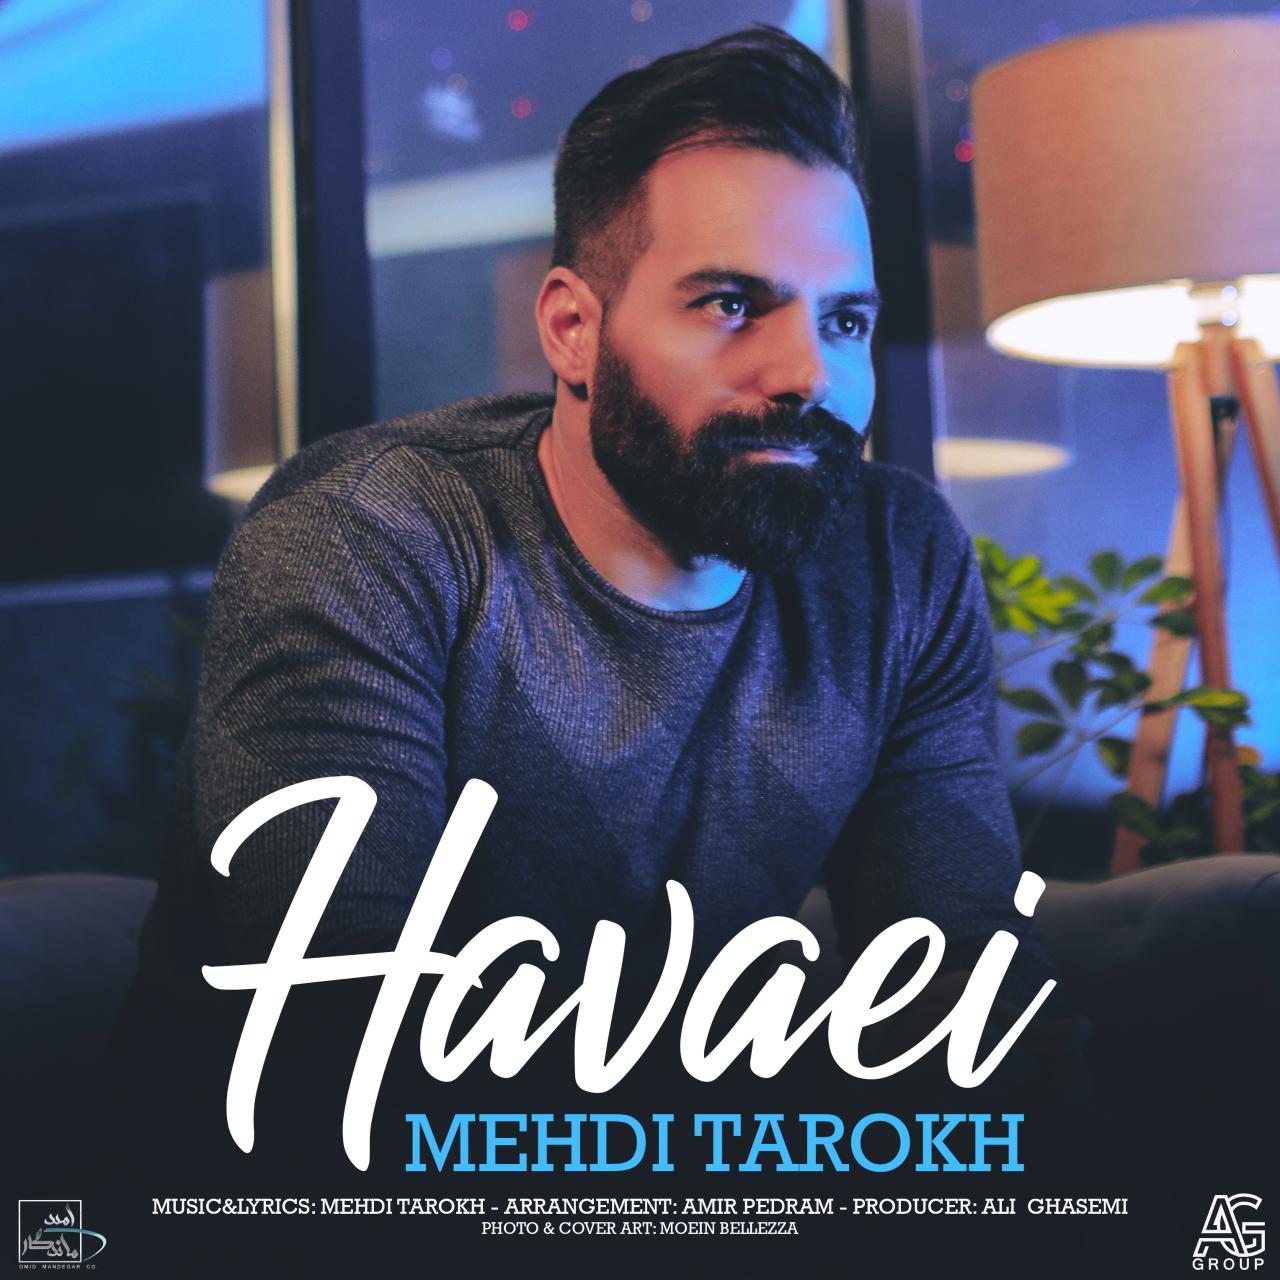  دانلود آهنگ جدید مهدی تارخ - هوایی | Download New Music By Mehdi Tarokh - Havaei